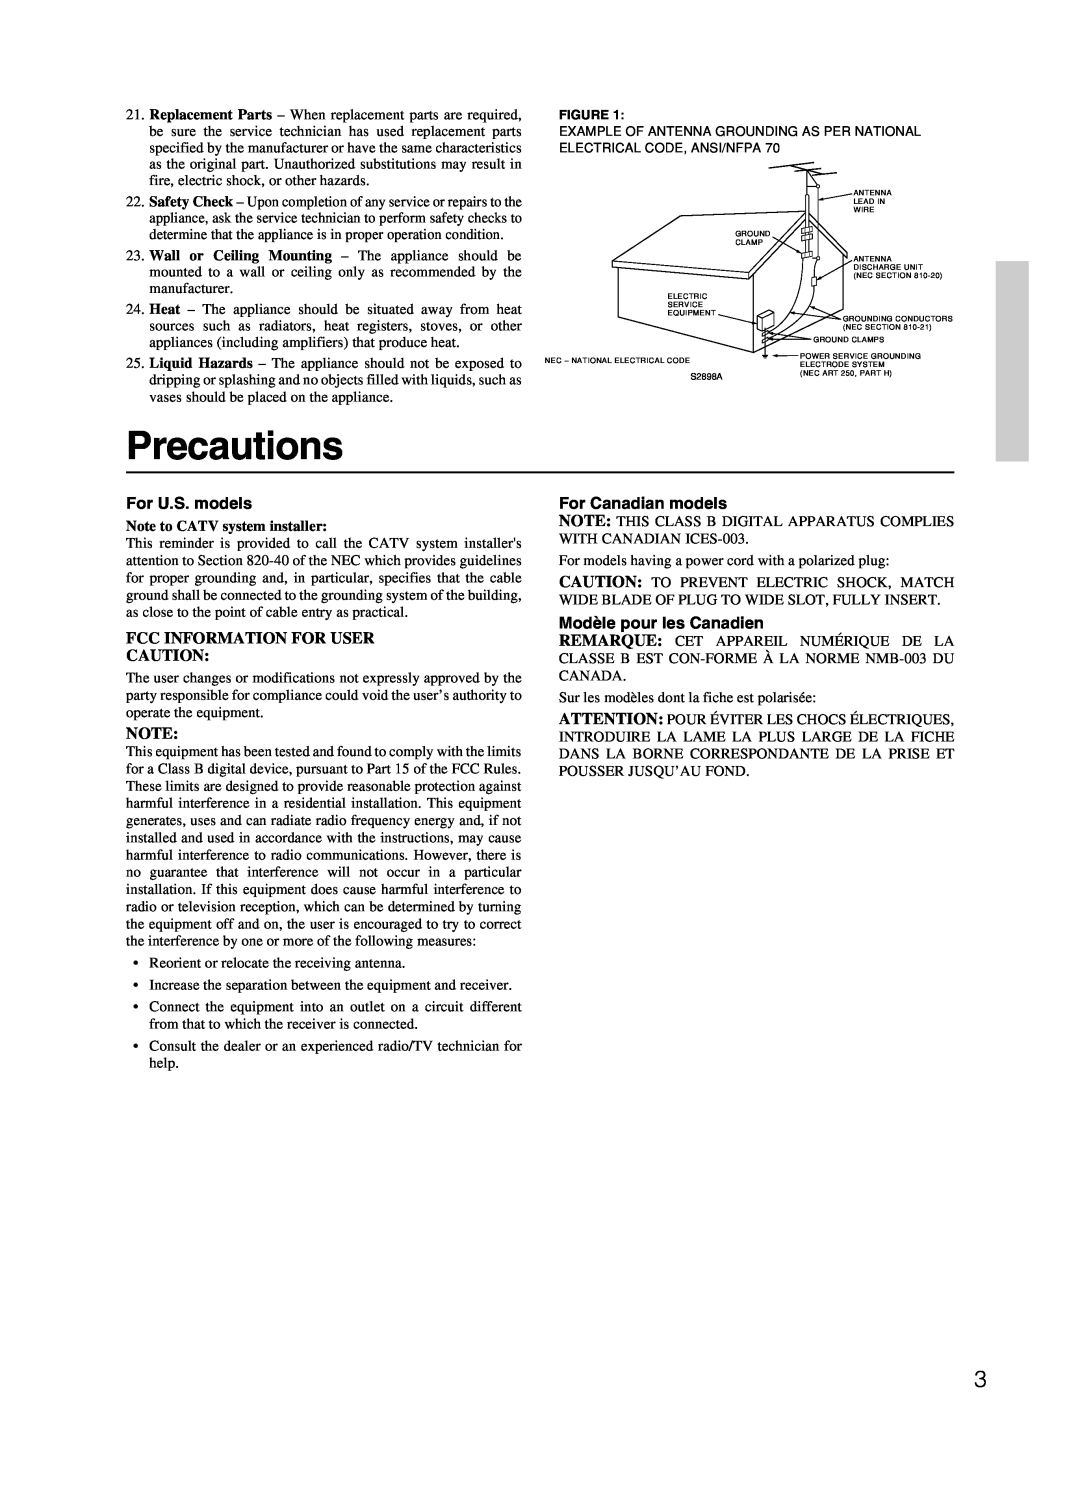 Onkyo HT-R410 Precautions, For U.S. models, Fcc Information For User, For Canadian models, Modèle pour les Canadien 